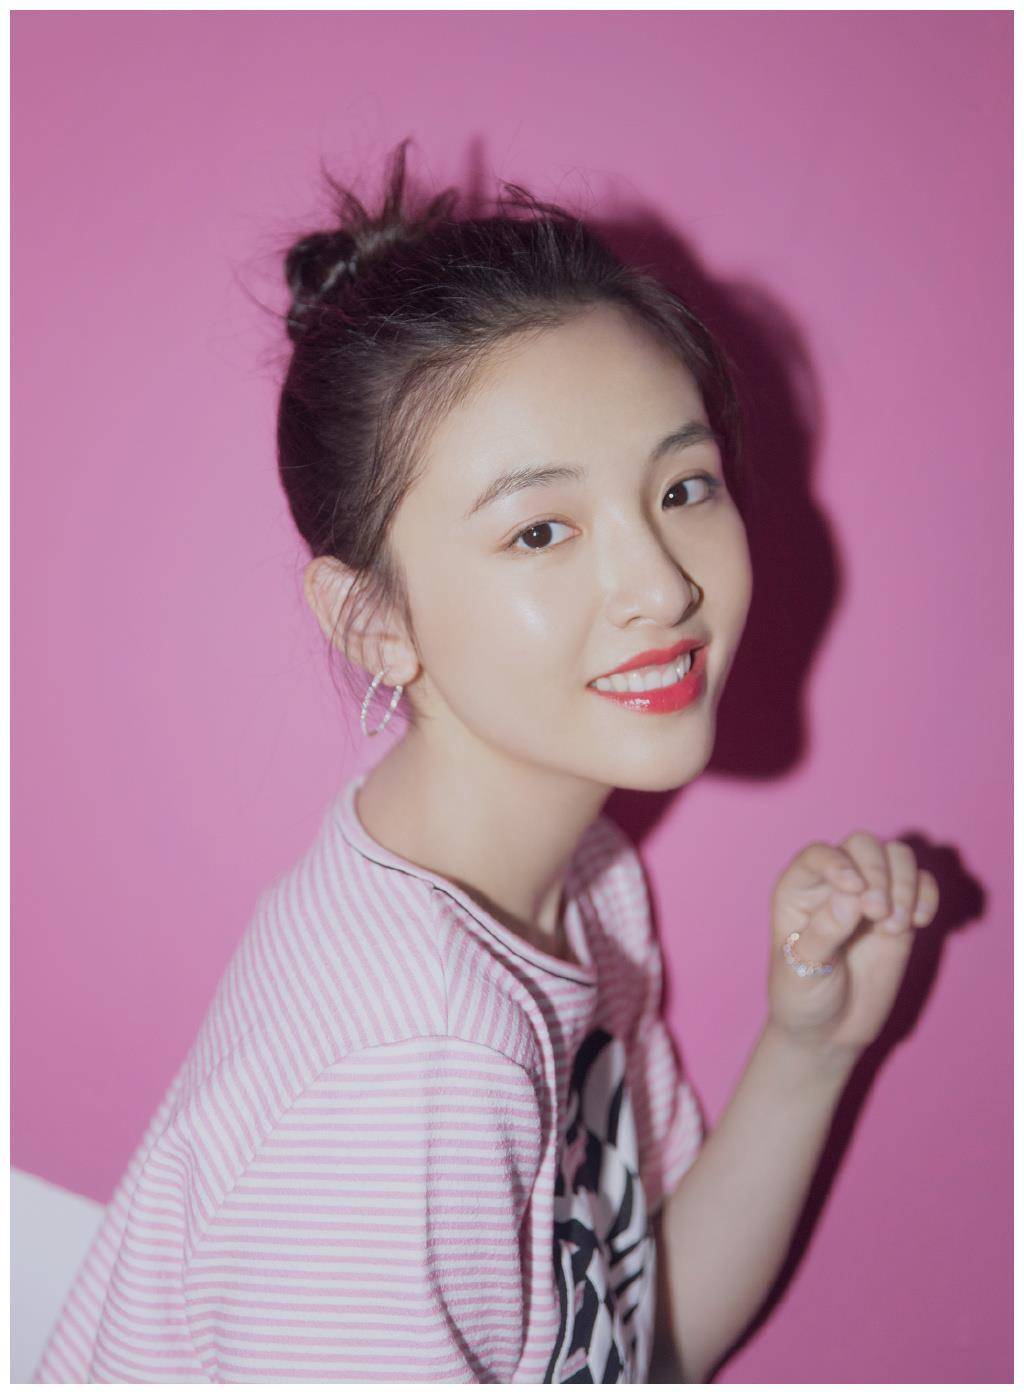 27岁吴倩终于换新造型丸子头发型搭粉t恤超短裙减龄又时髦